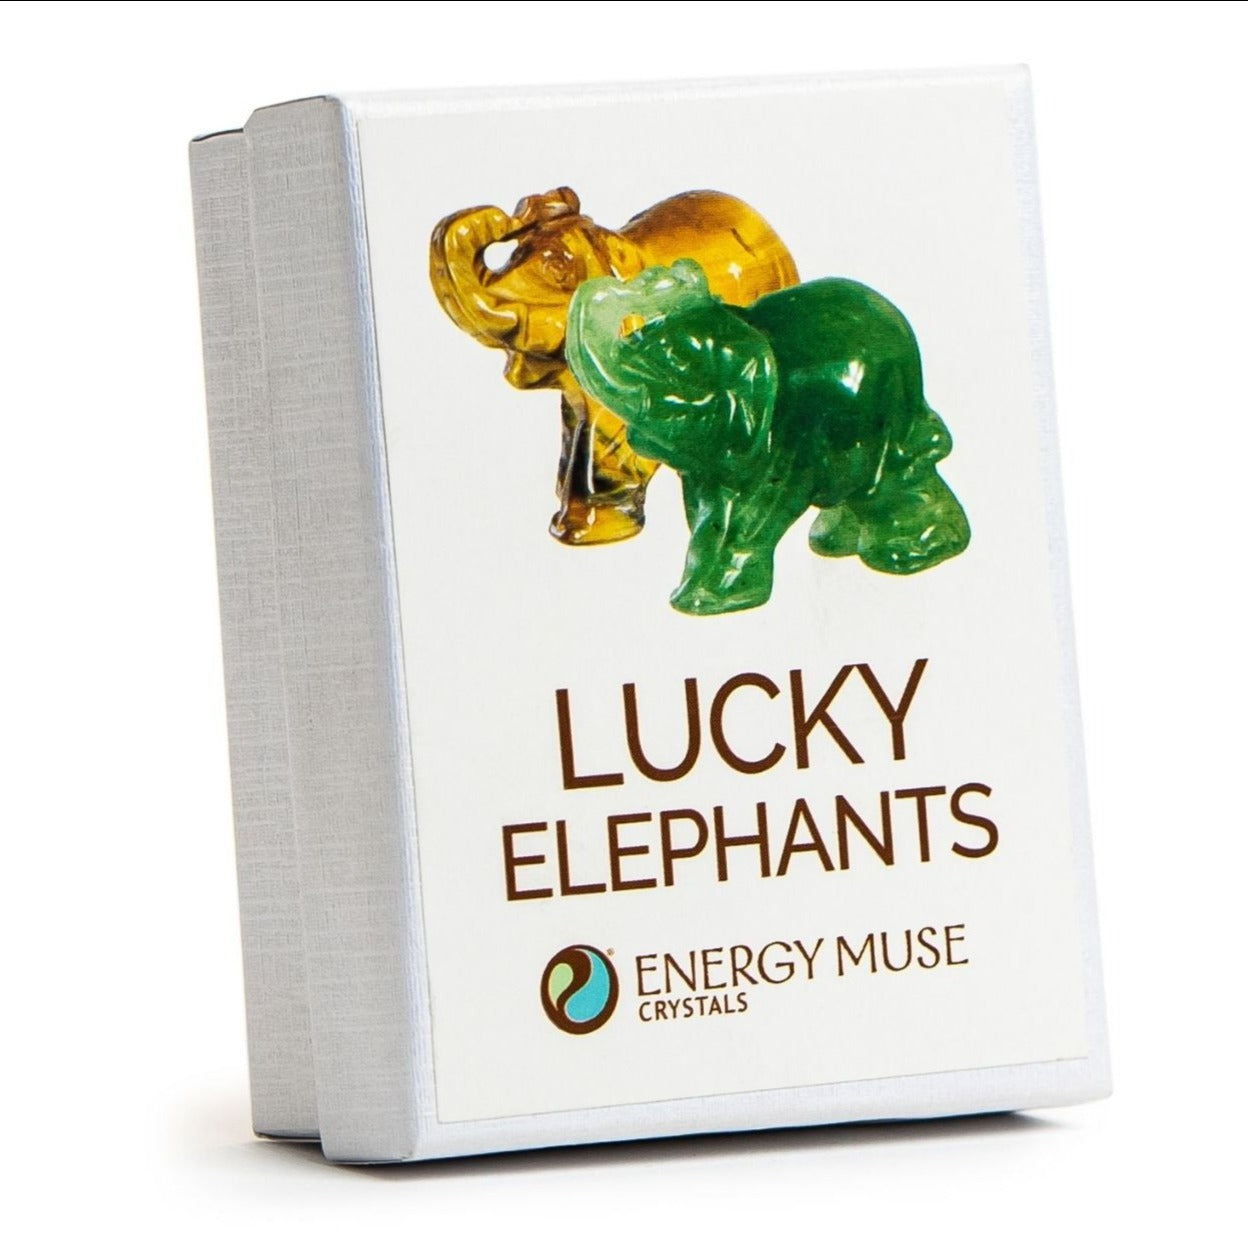 Lucky Crystal Elephants